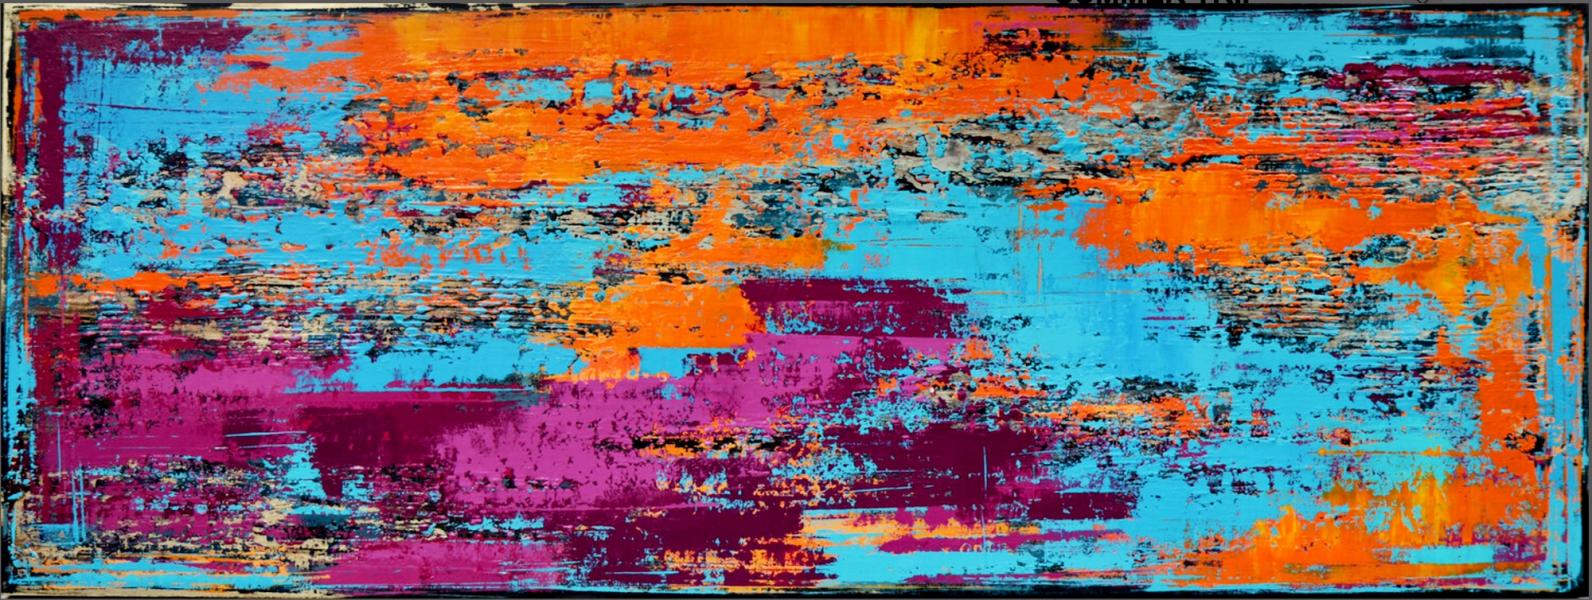 In Inez Froehlich's "SUMMER TRIP" abstraktes farbenfrohes Gemälde mit Strukturen. Warme, lebendige Farben in Orange , Blau, Türkis und Violett. Der Stil des Gemäldes ist Shabby chic, Industriestil, Vintage, Retro.